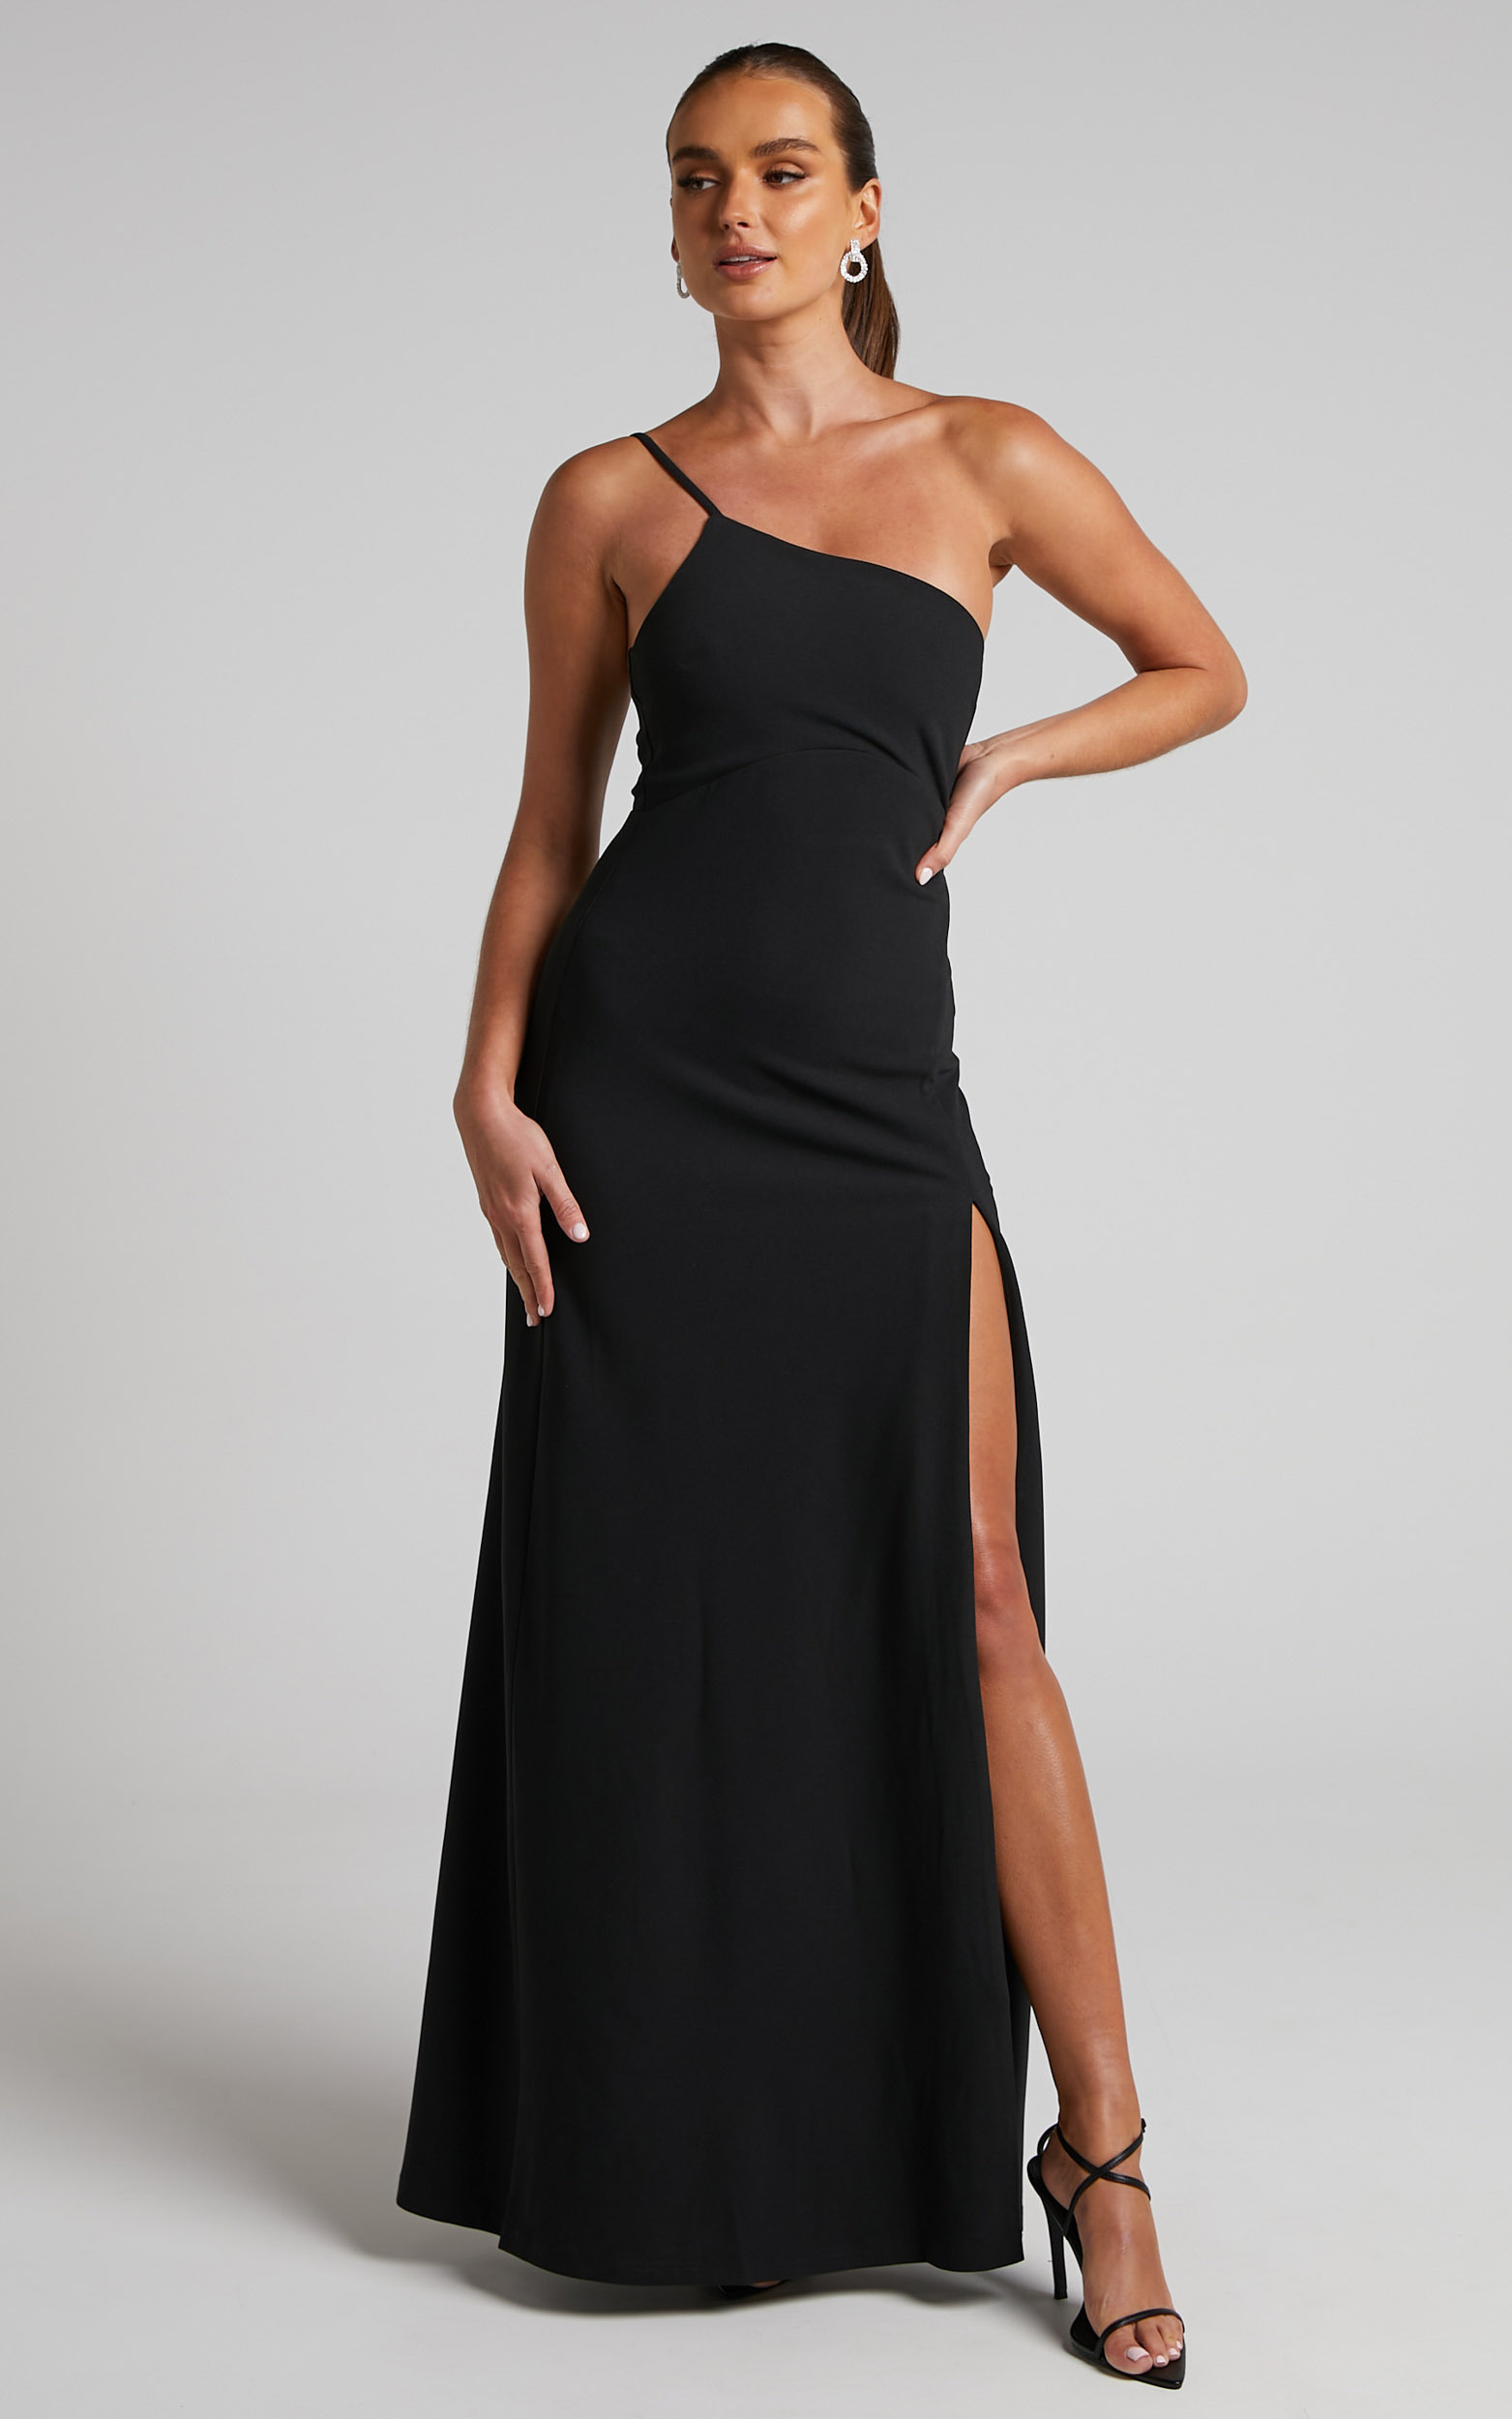 Magnaye Maxi Dress - One Shoulder Thigh Split Dress in Black - 06, BLK1, hi-res image number null